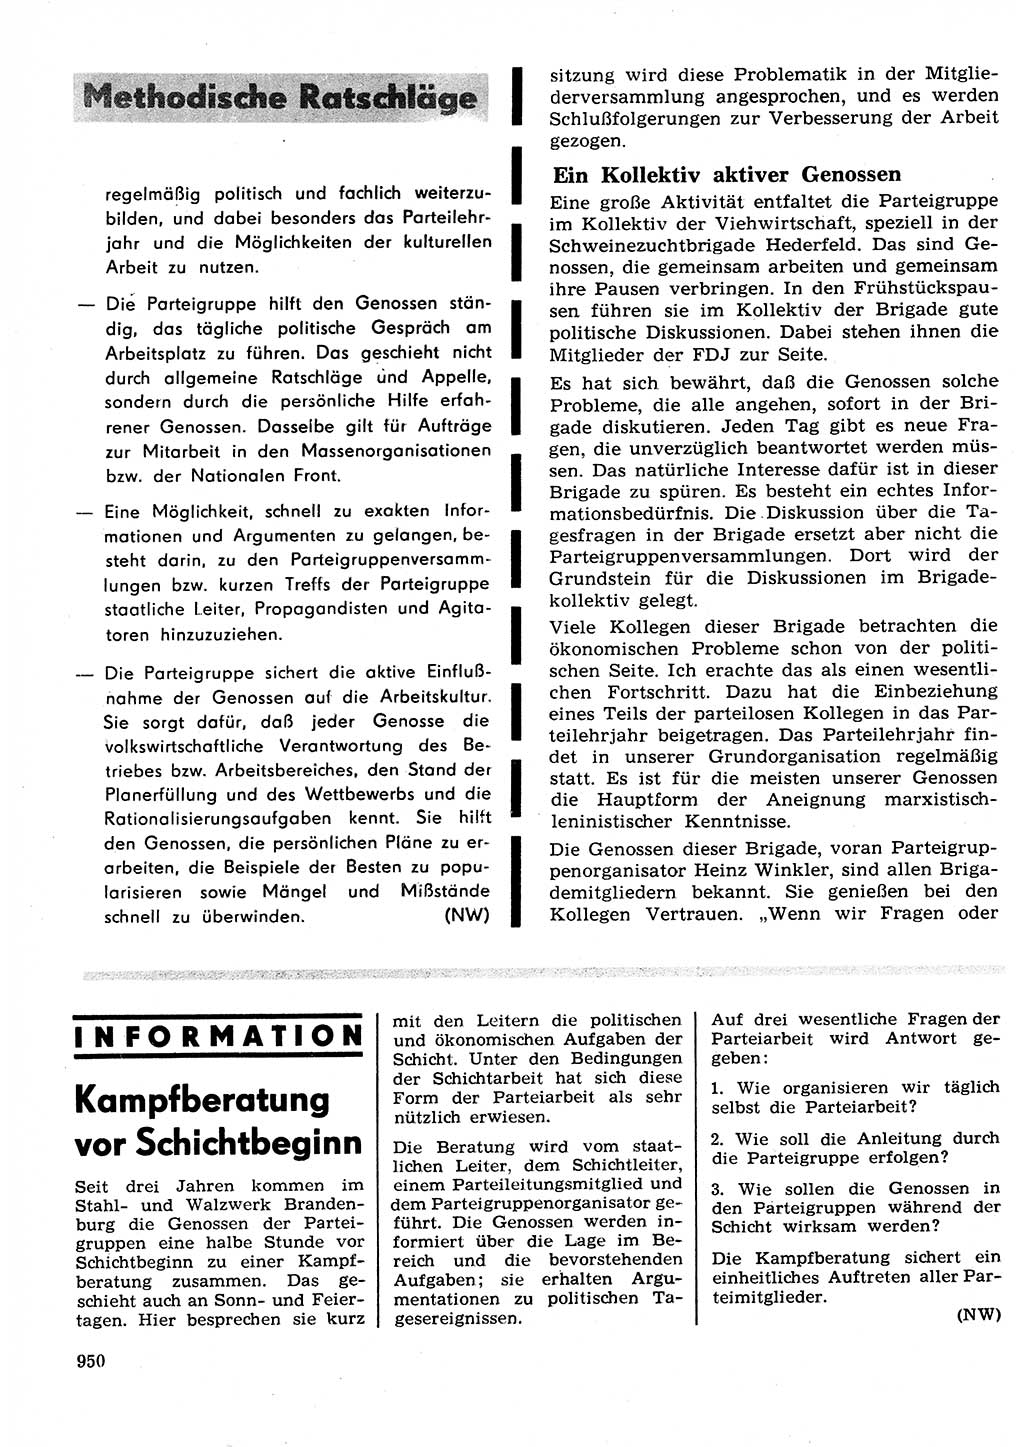 Neuer Weg (NW), Organ des Zentralkomitees (ZK) der SED (Sozialistische Einheitspartei Deutschlands) für Fragen des Parteilebens, 27. Jahrgang [Deutsche Demokratische Republik (DDR)] 1972, Seite 950 (NW ZK SED DDR 1972, S. 950)